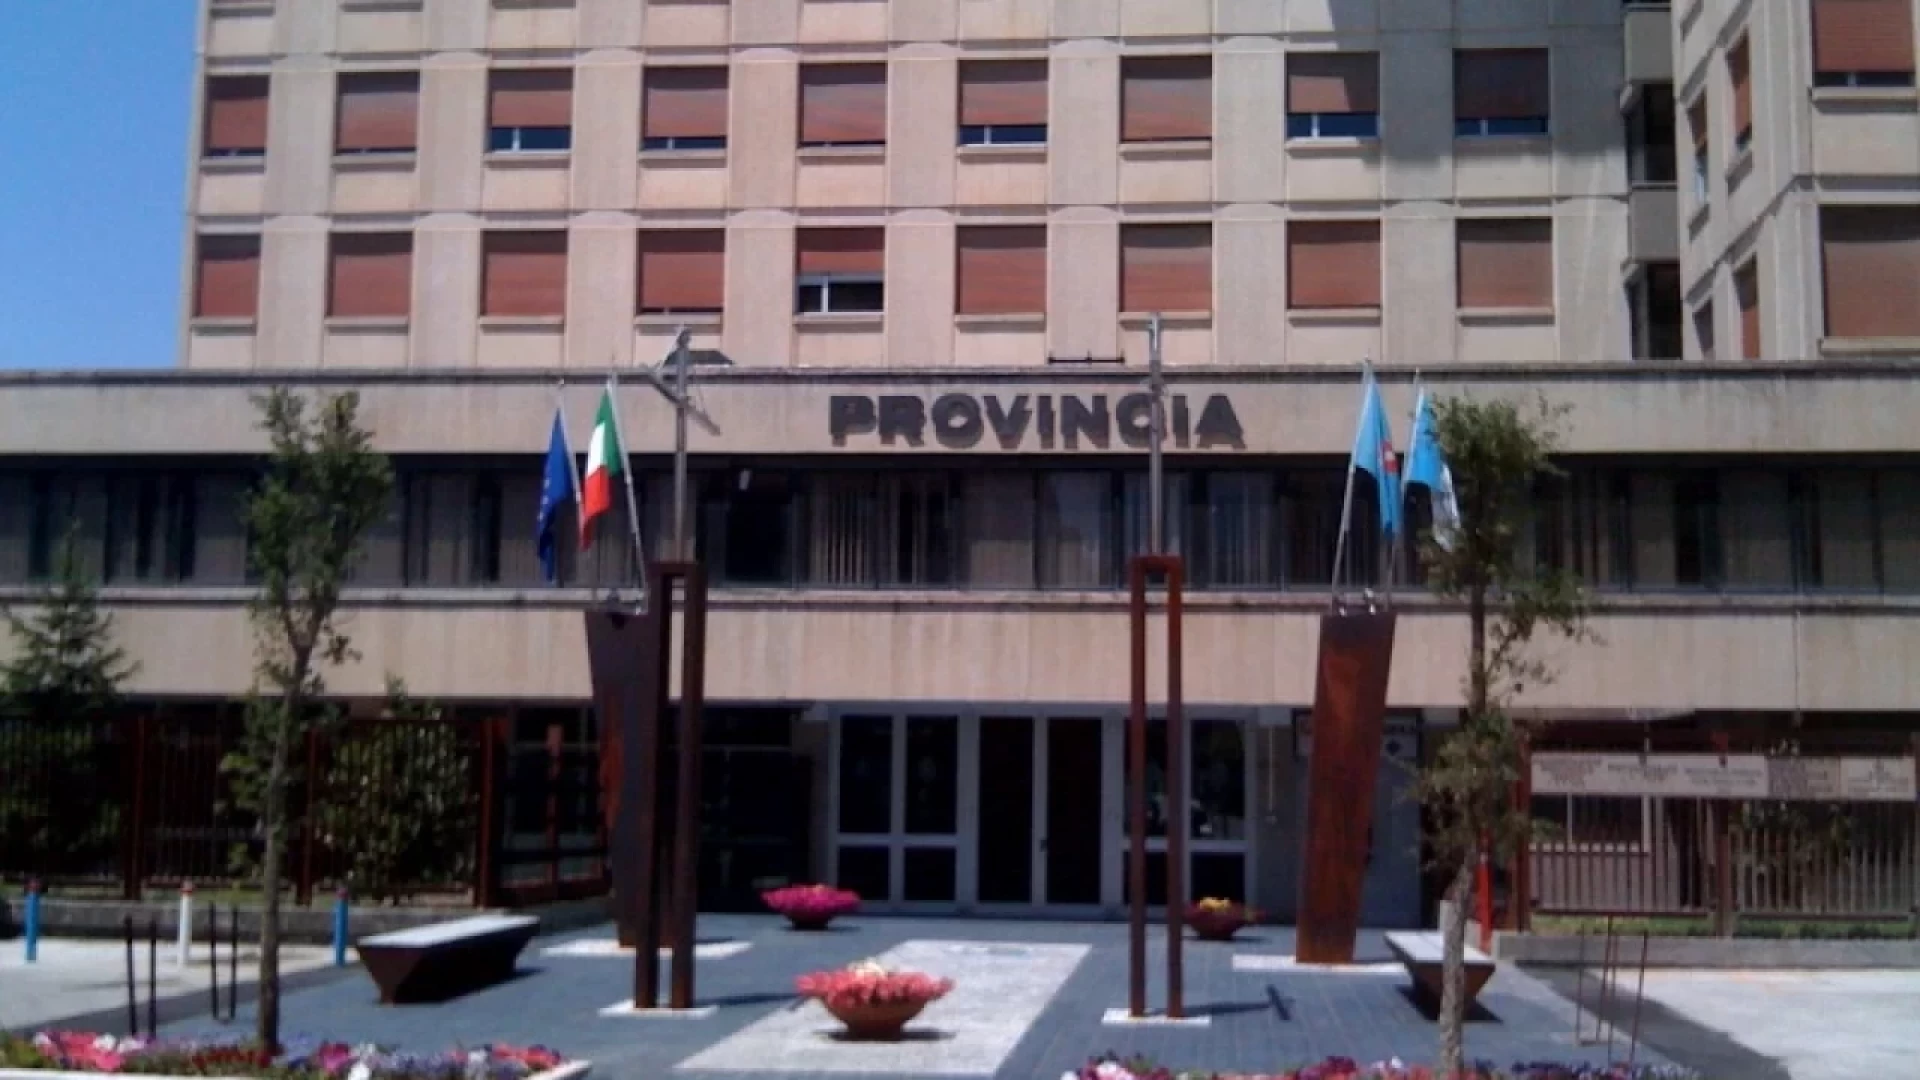 La Provincia di Isernia festeggia oggi i 54 anni dalla sua istituzione. La nota dell’Ex presidente Alfredo Ricci.